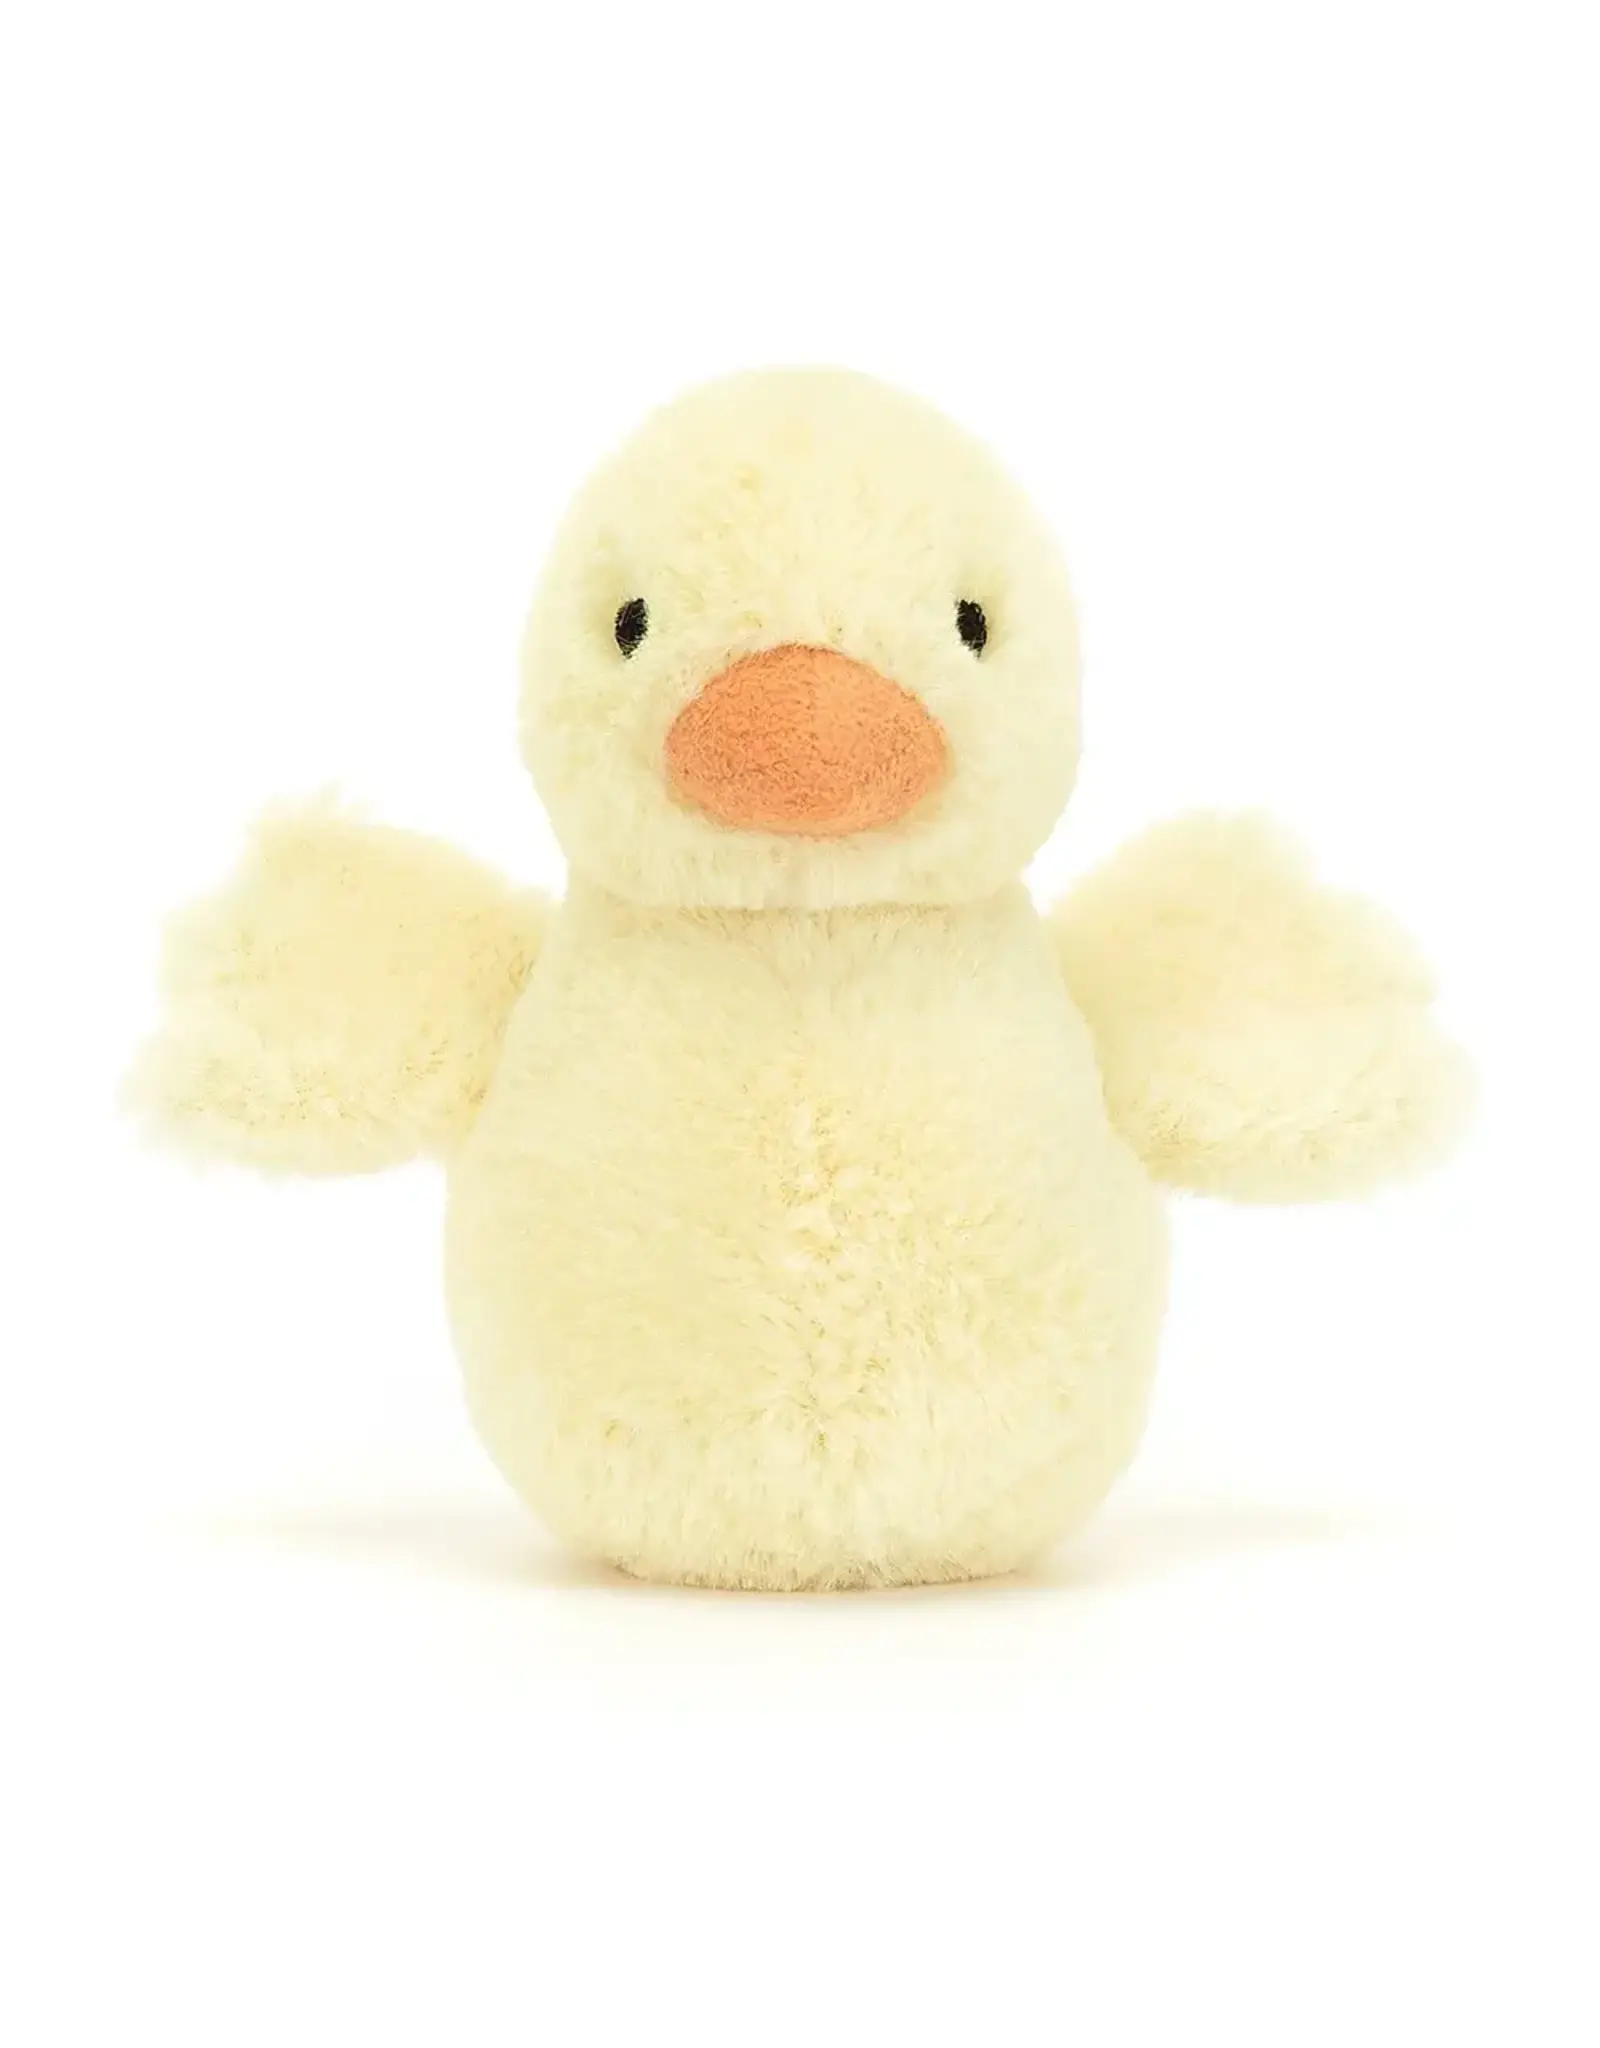 Jellycat Knuffel - Fluffy Duck